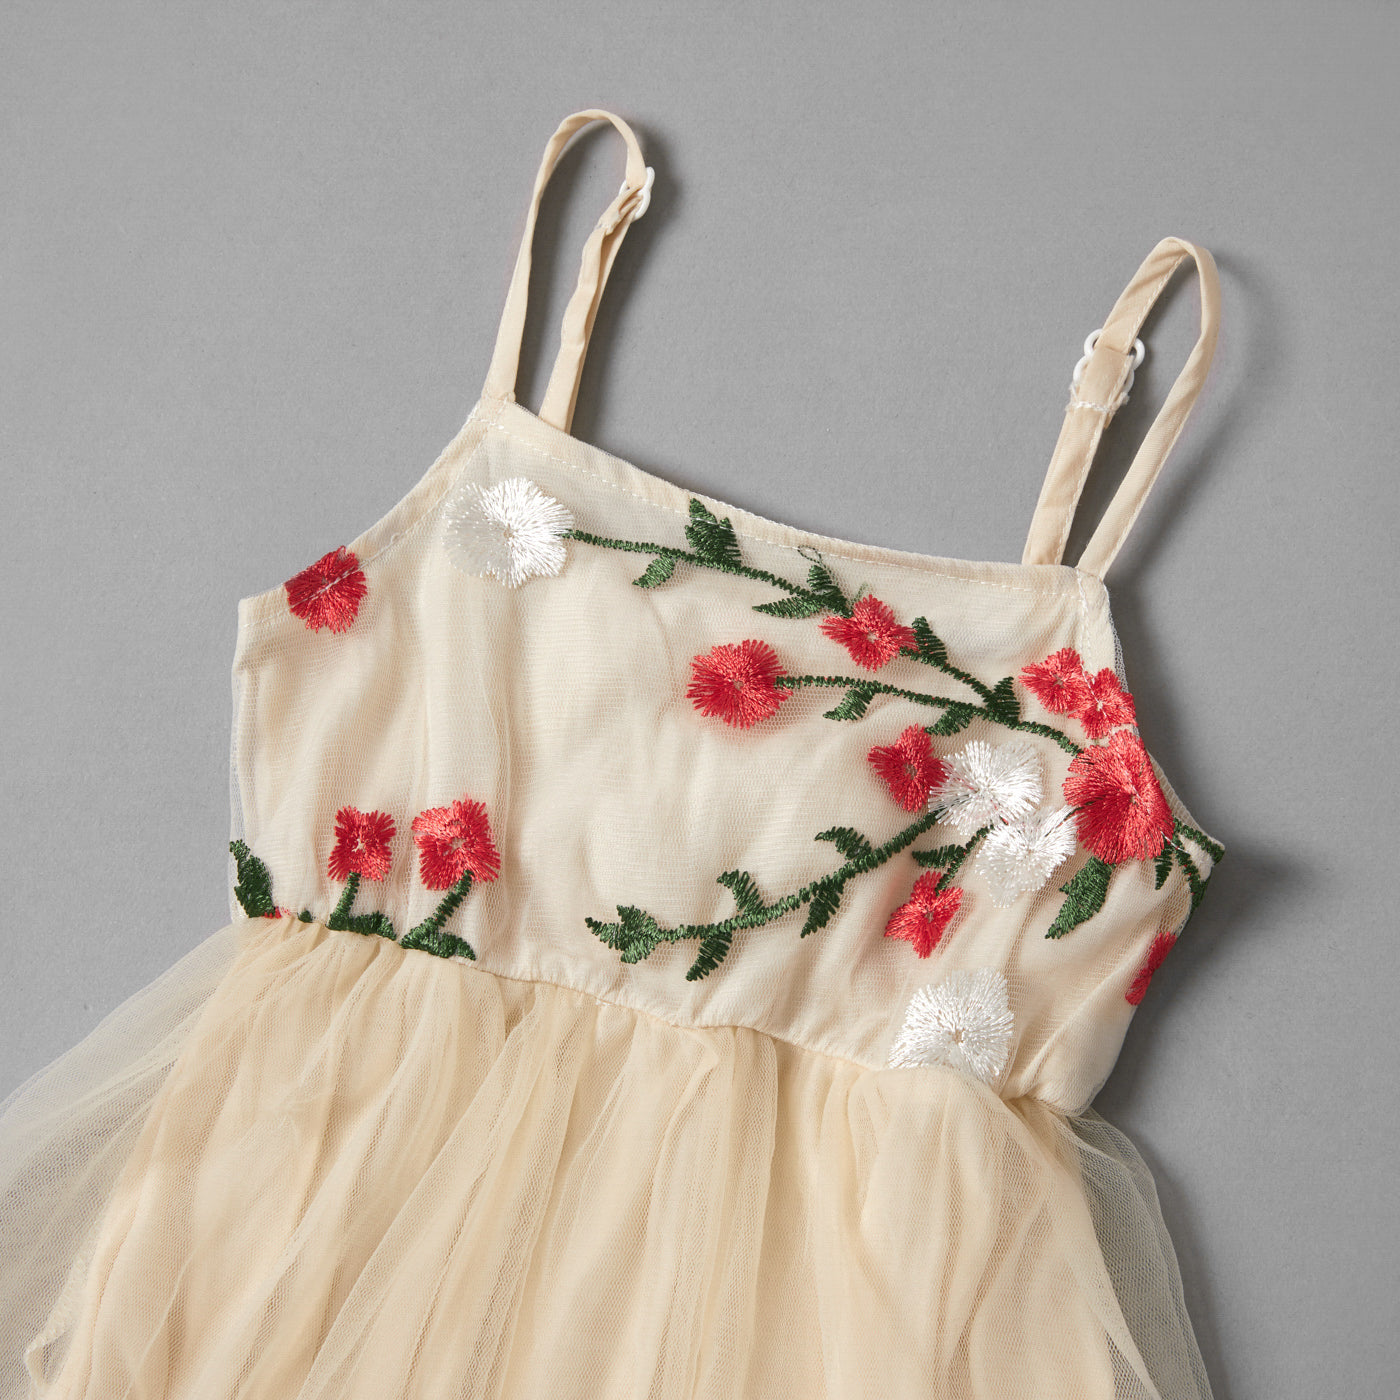 Tiulowa sukienka z motywem kwiatów-Babylette